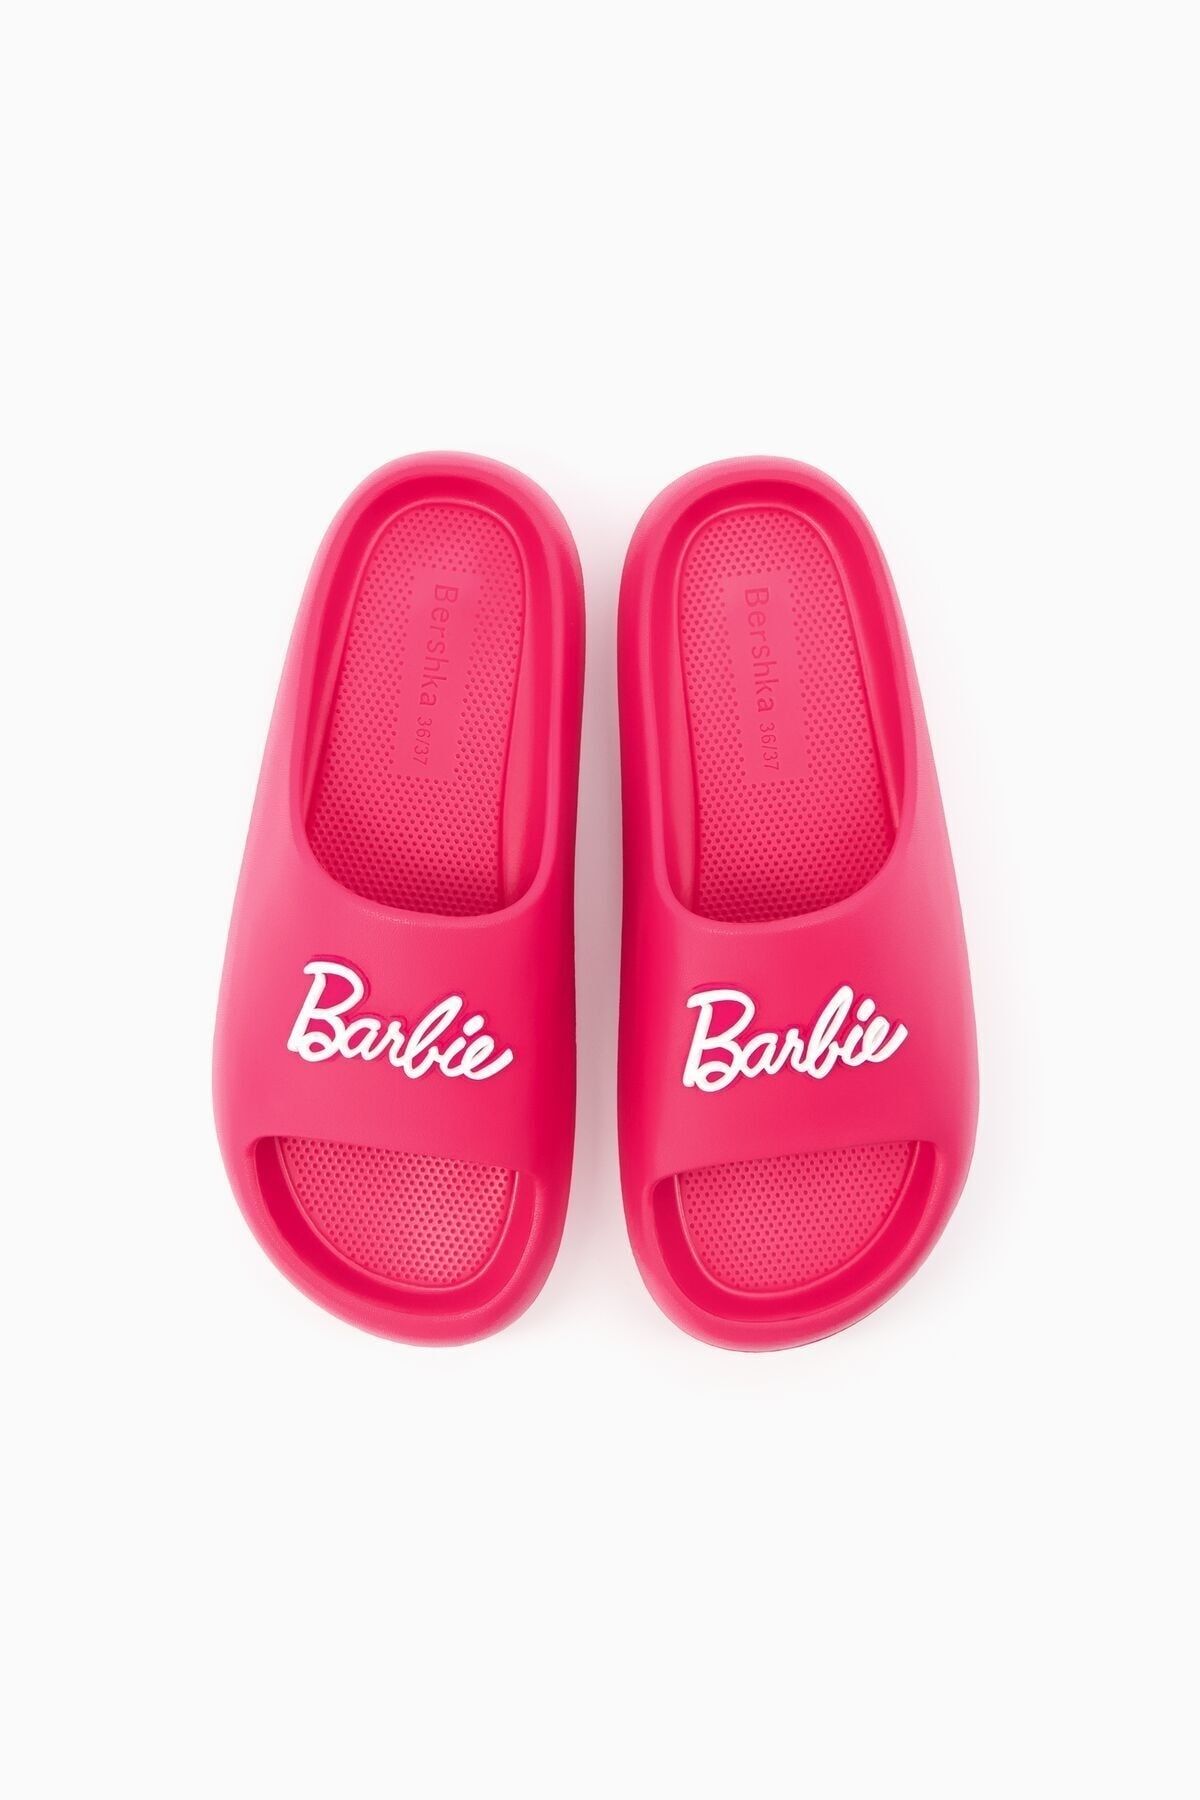 Bershka Barbie düz bantlı sandalet